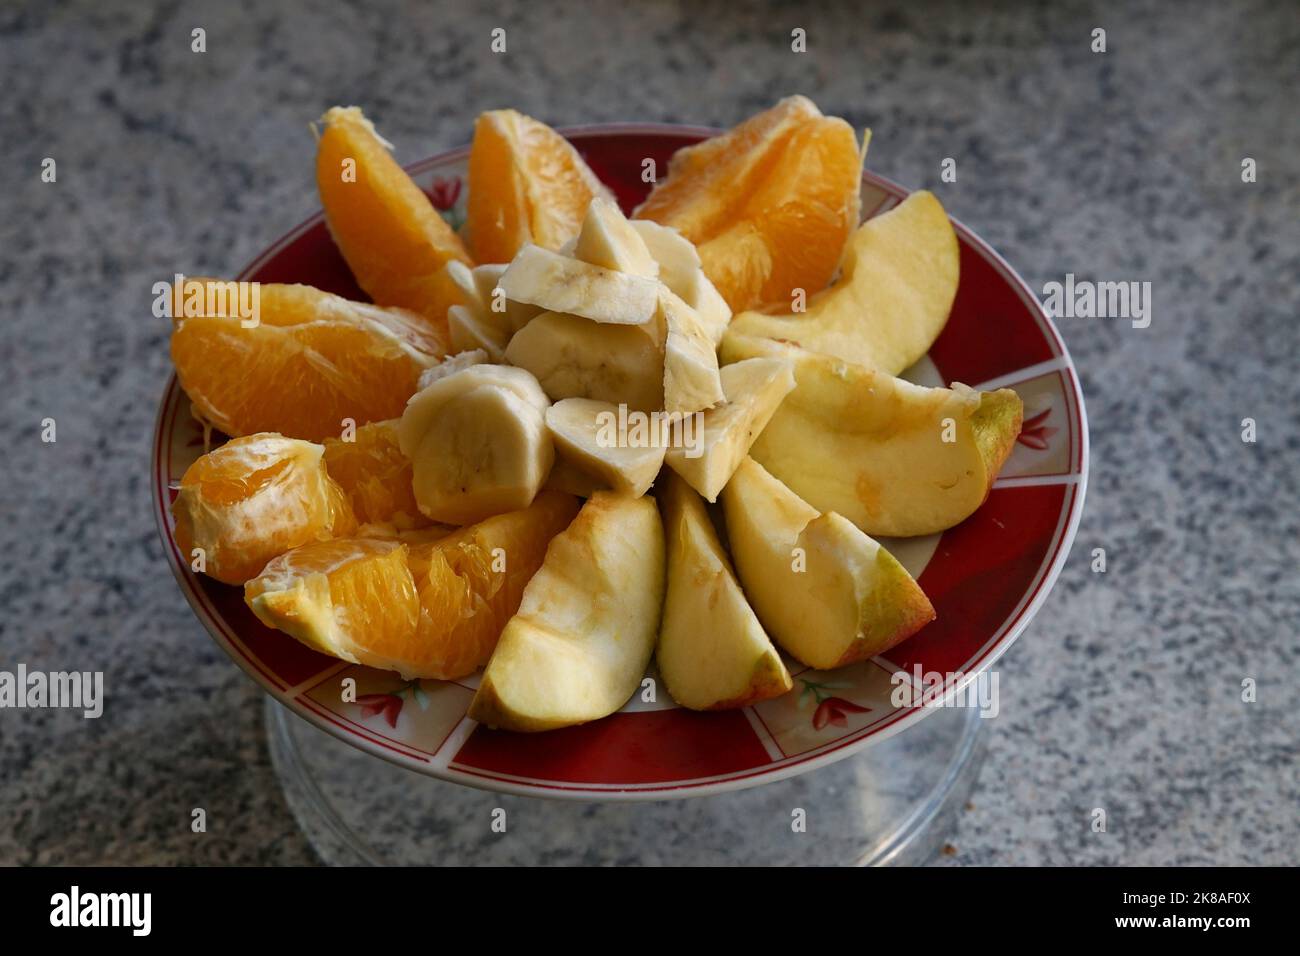 Frühstücksteller mit Obst Stock Photo